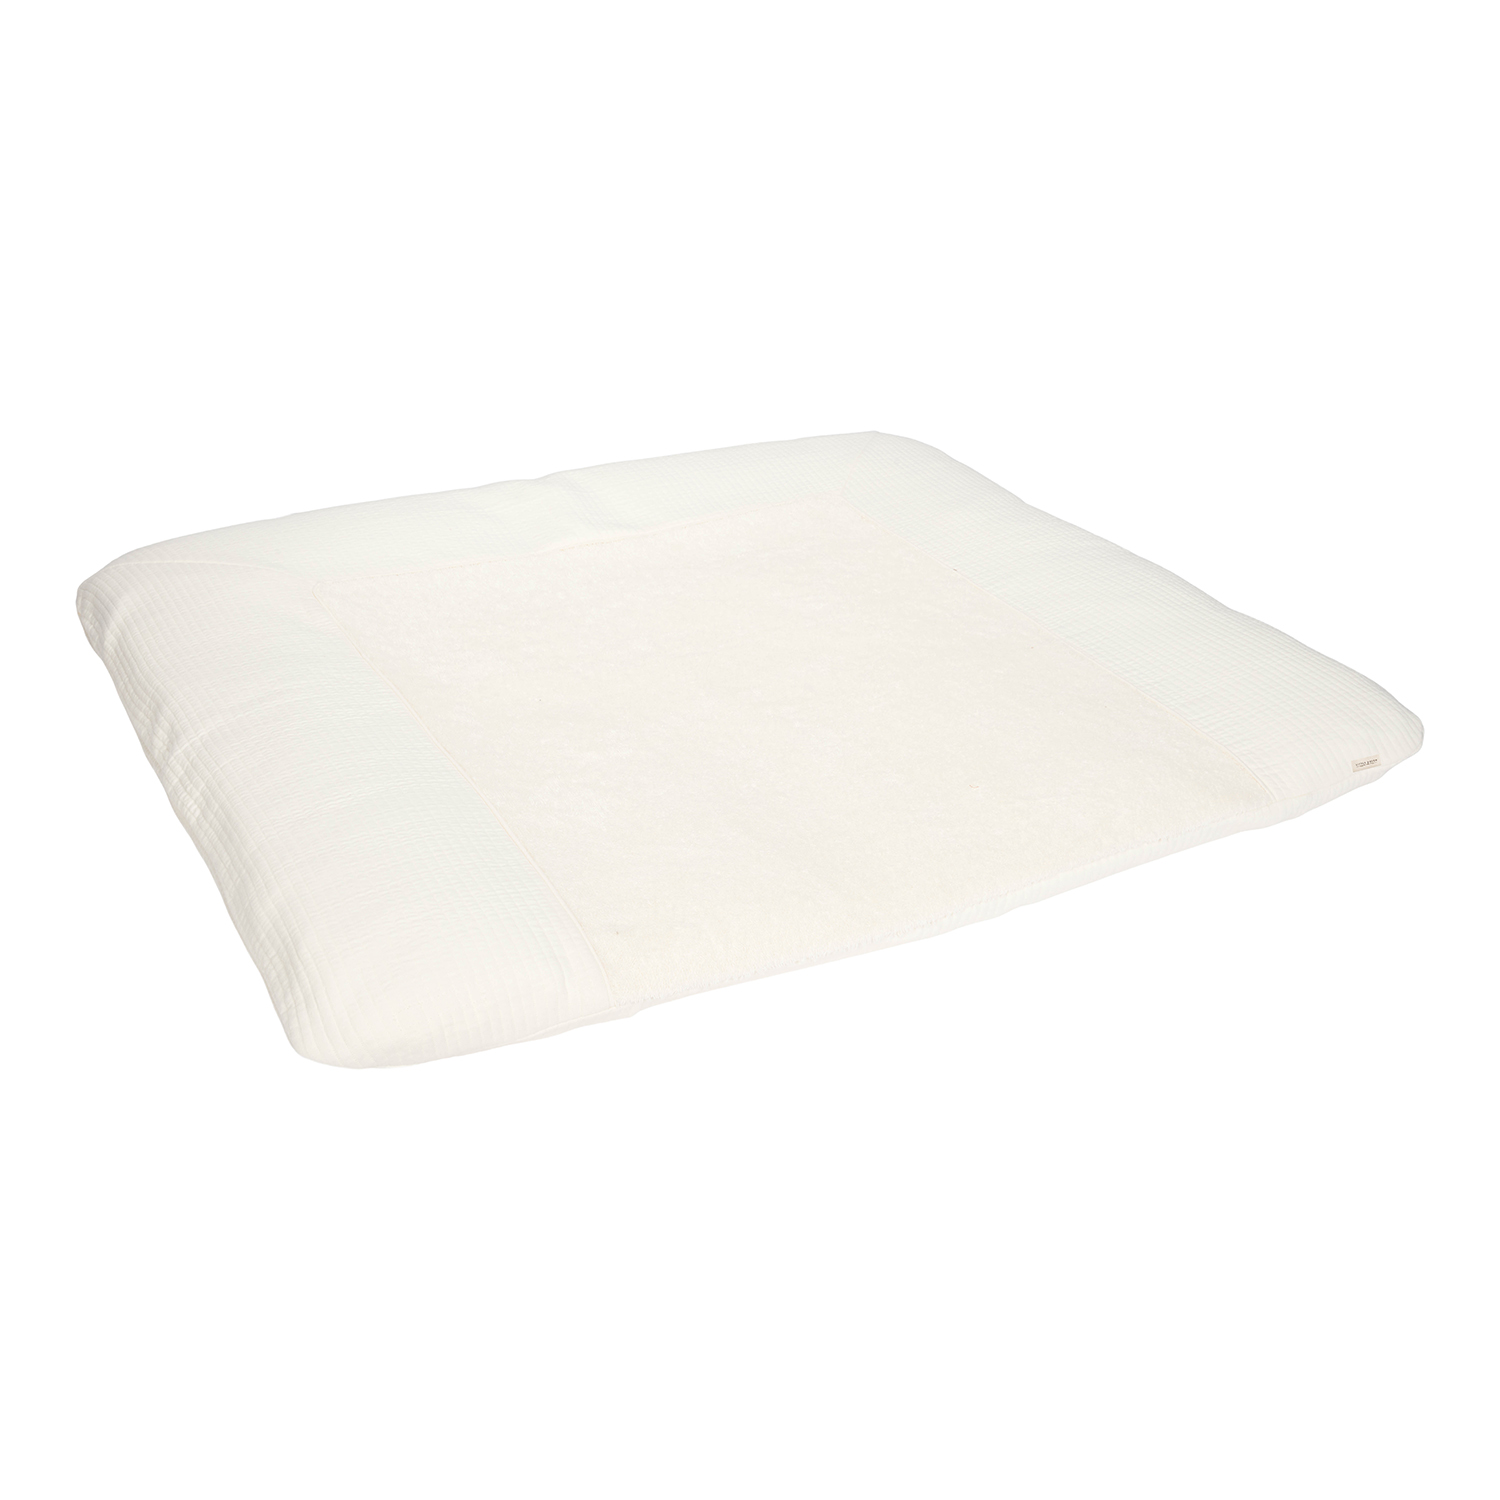 Wickelauflagenbezug Pure soft weiß (75x85 cm)